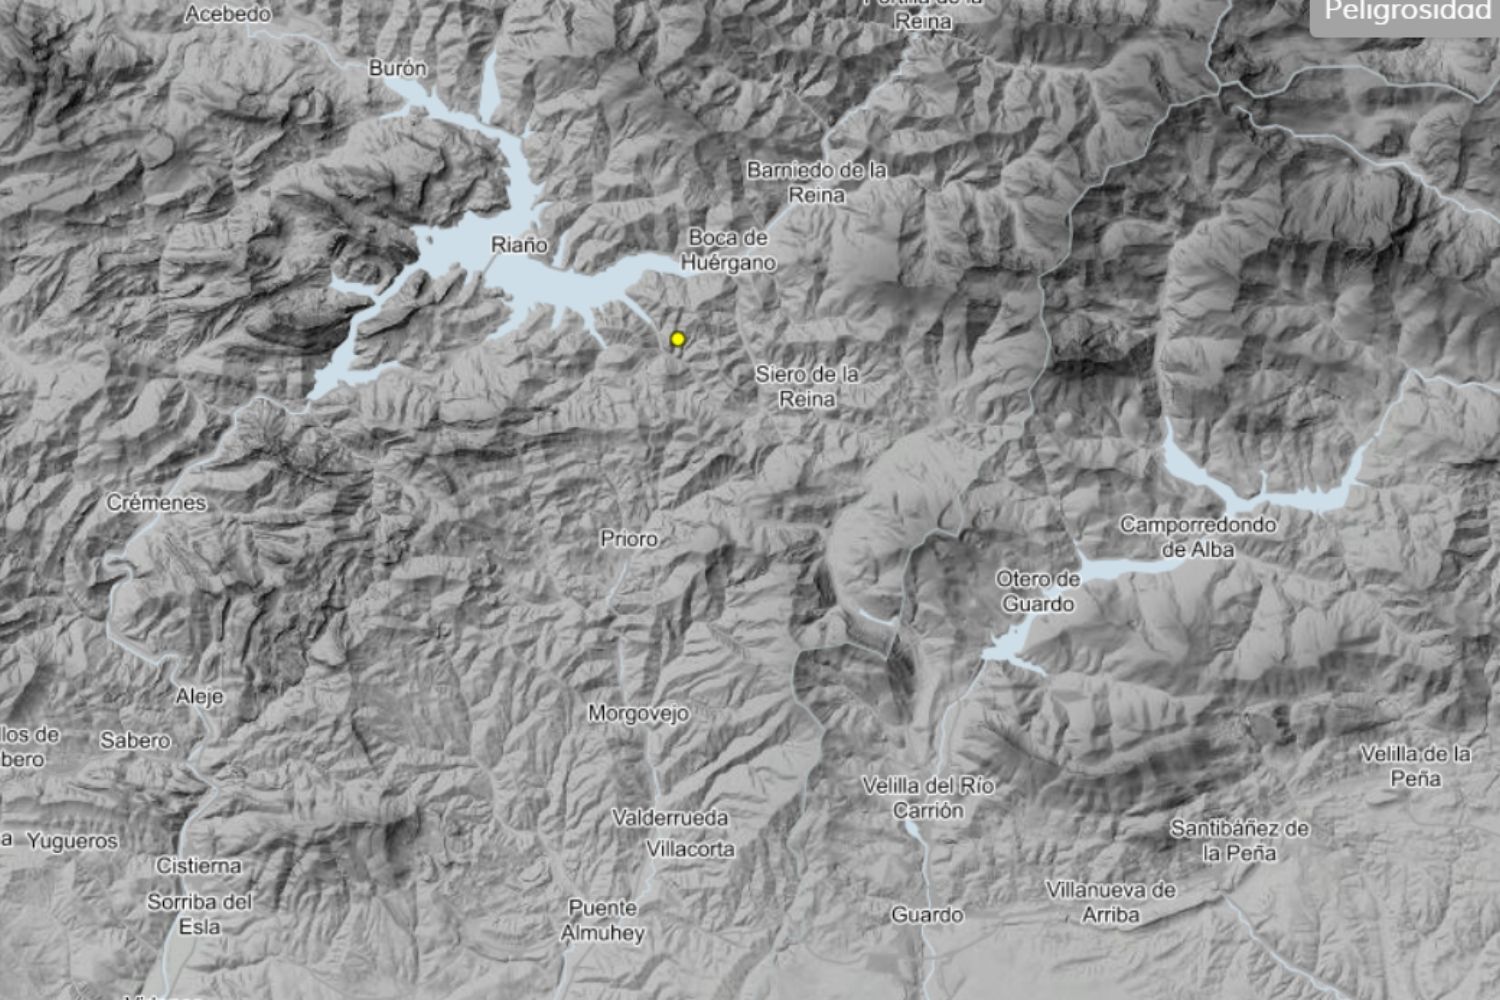 Un leve terremoto sacude la montaña de Riaño en las primeras horas del Lunes Santo